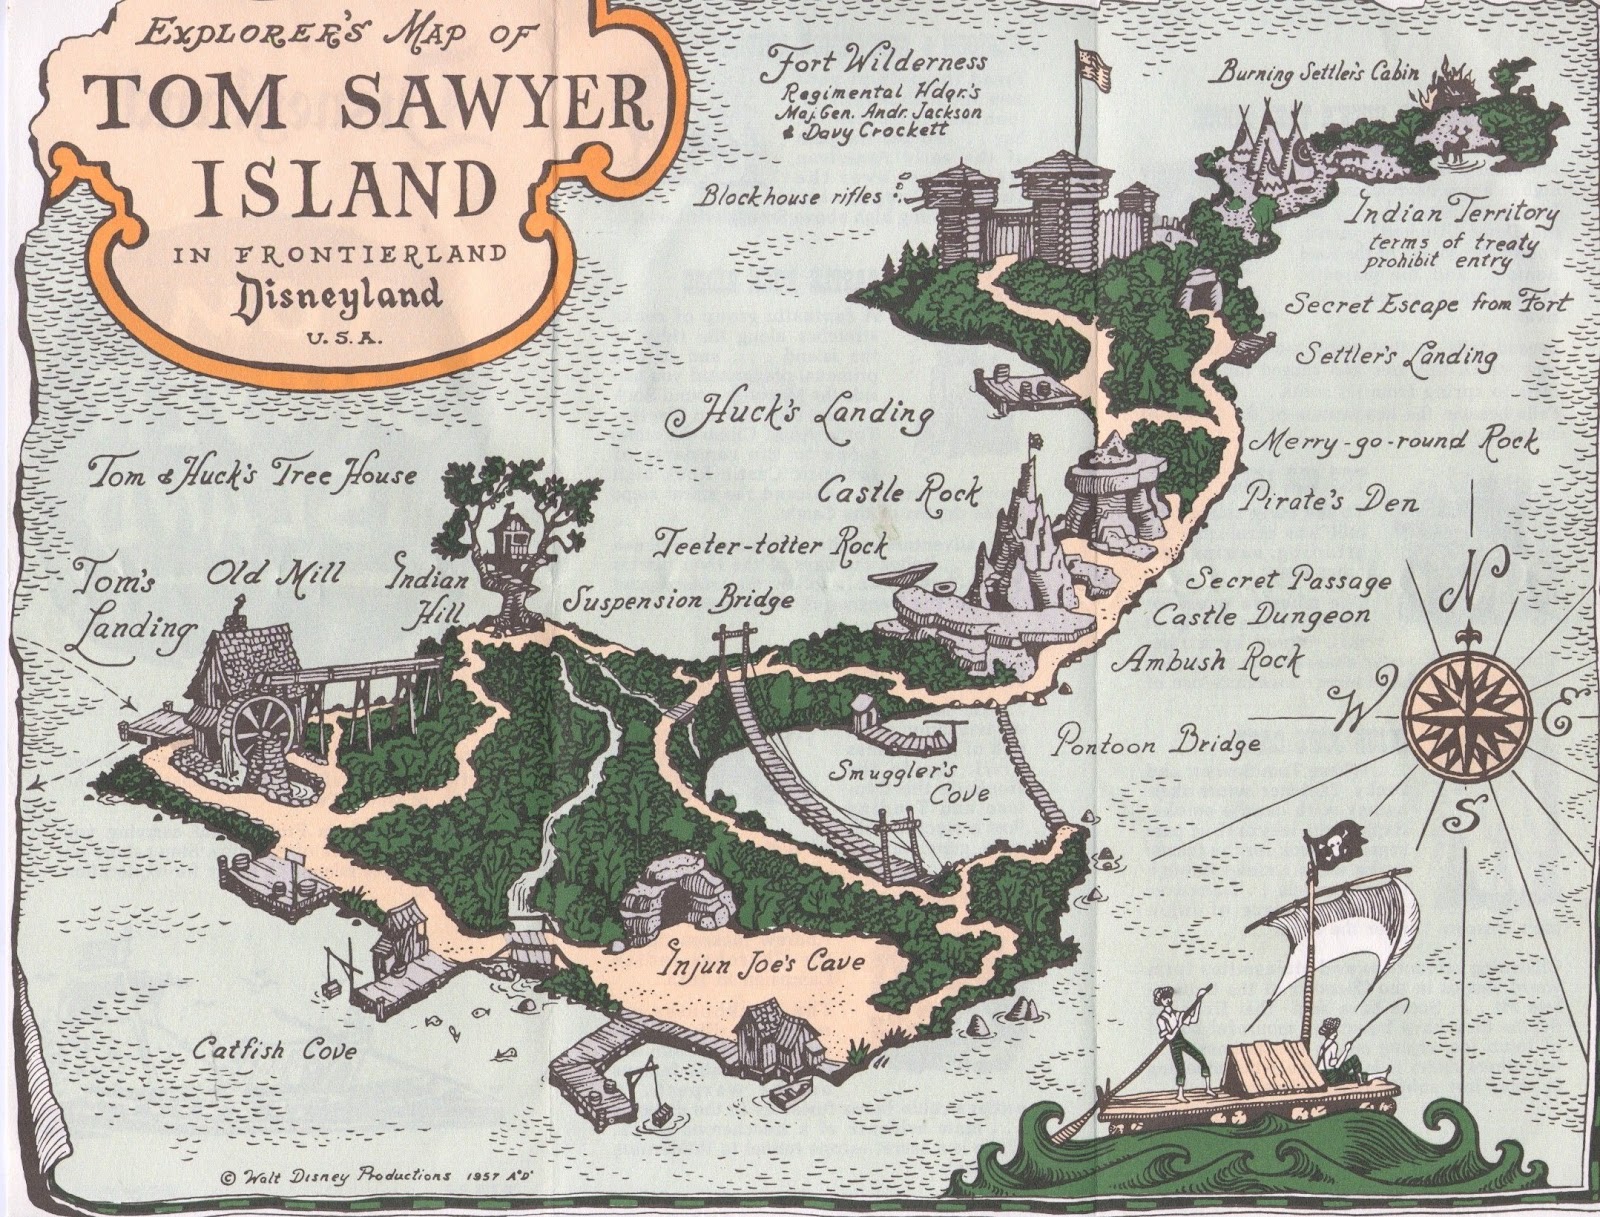 Disneyland Trip: Tom Sawyer Island map